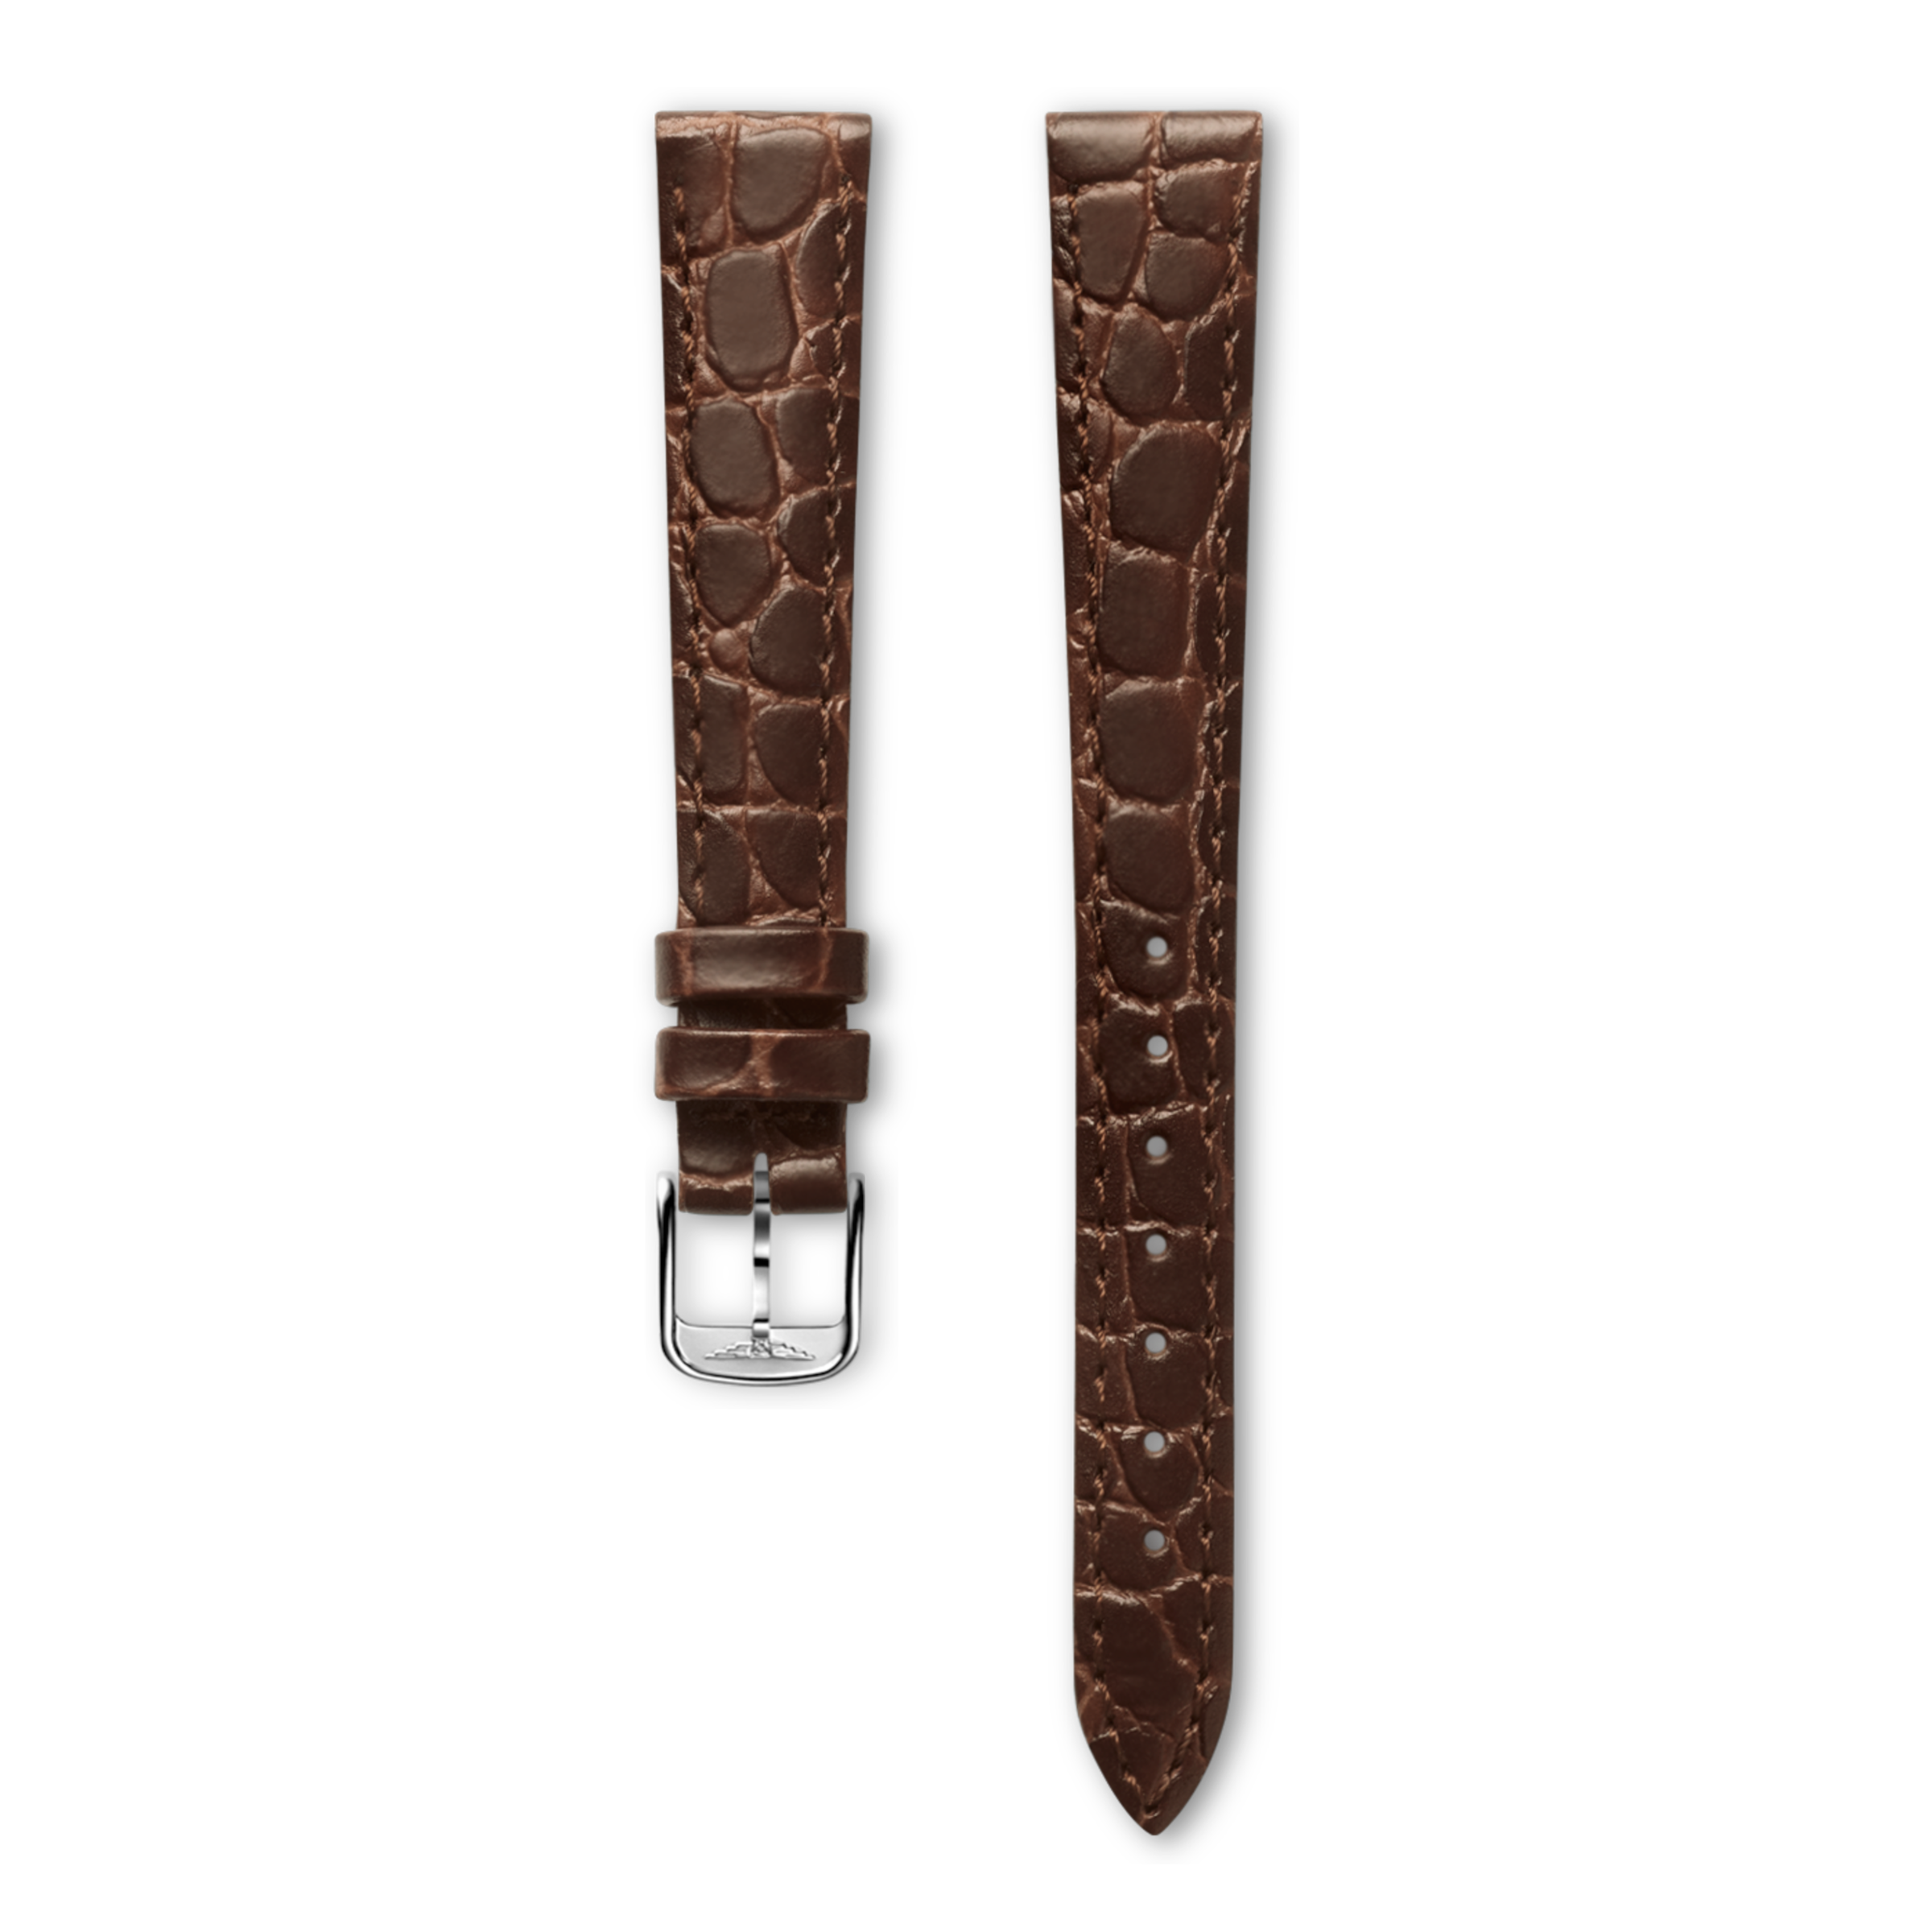 Semi matt brown calf leather strap